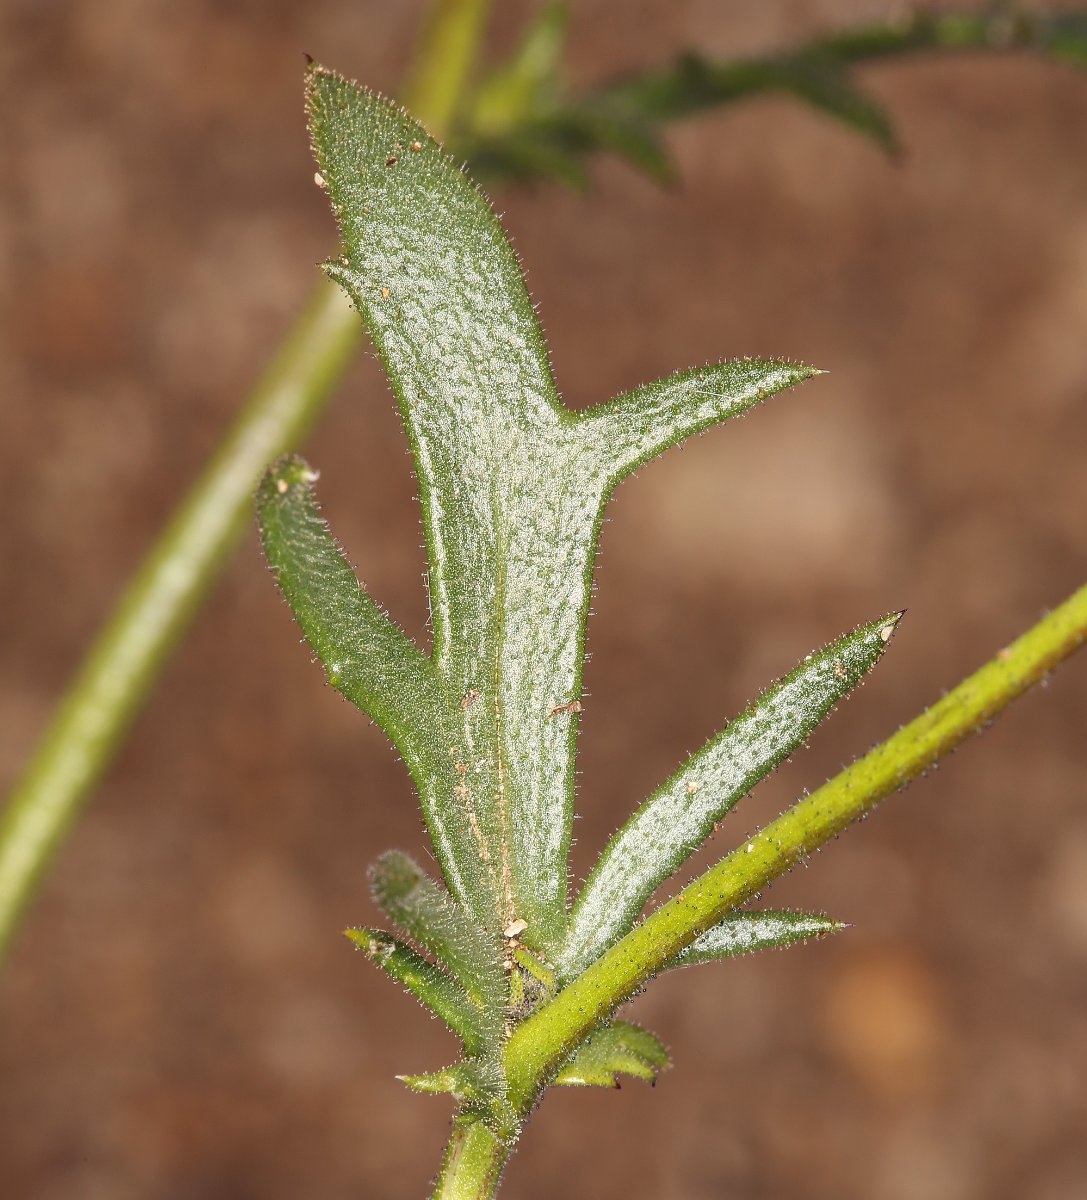 Gilia brecciarum ssp. neglecta